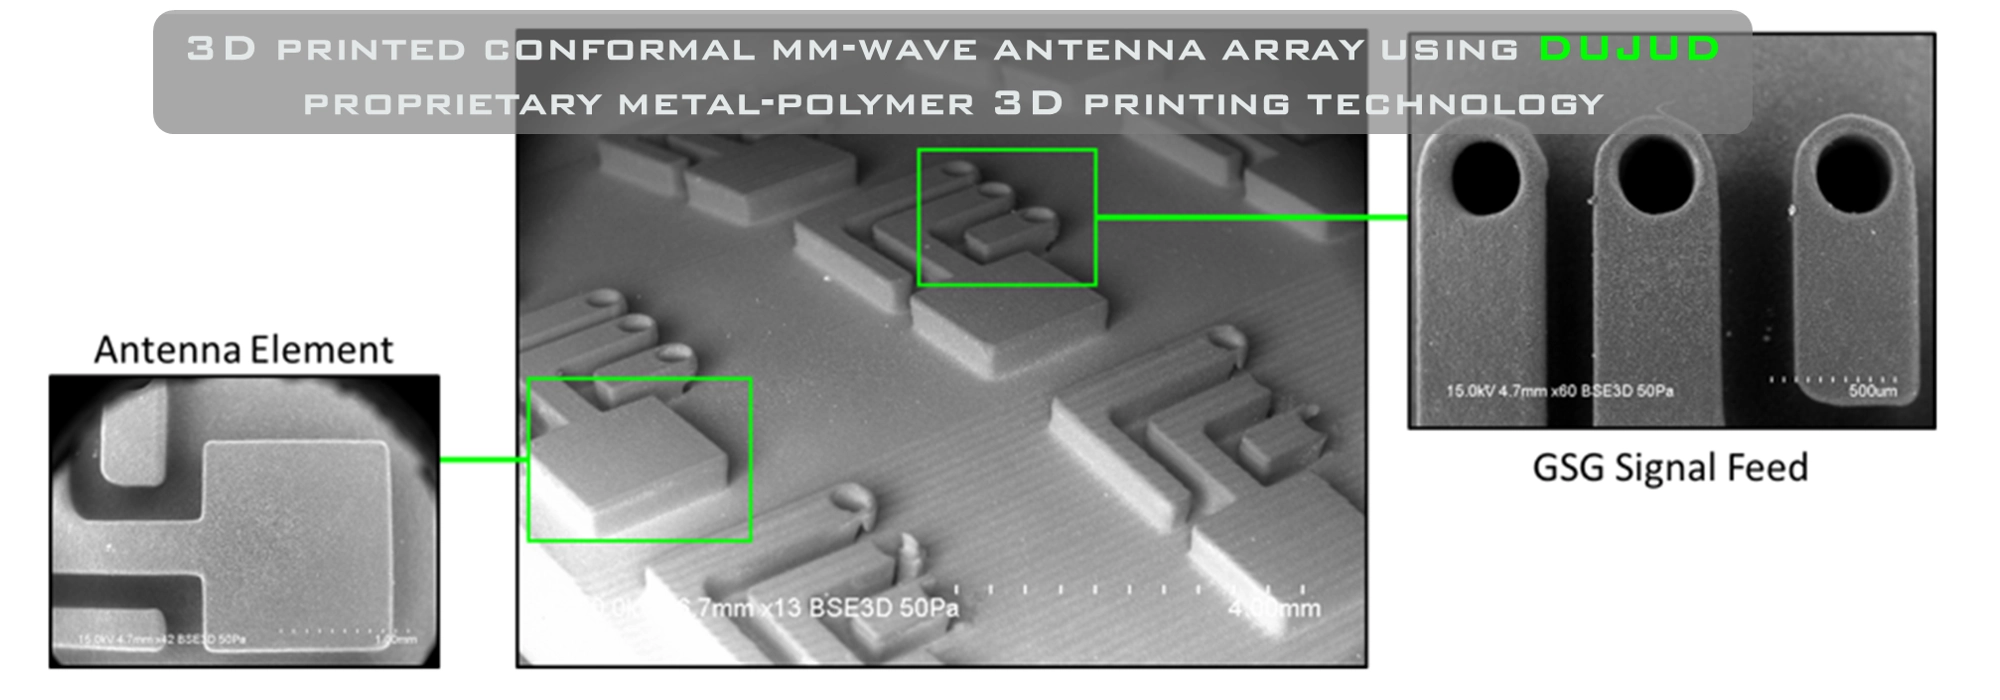 Conformal metal antenna 3D printed